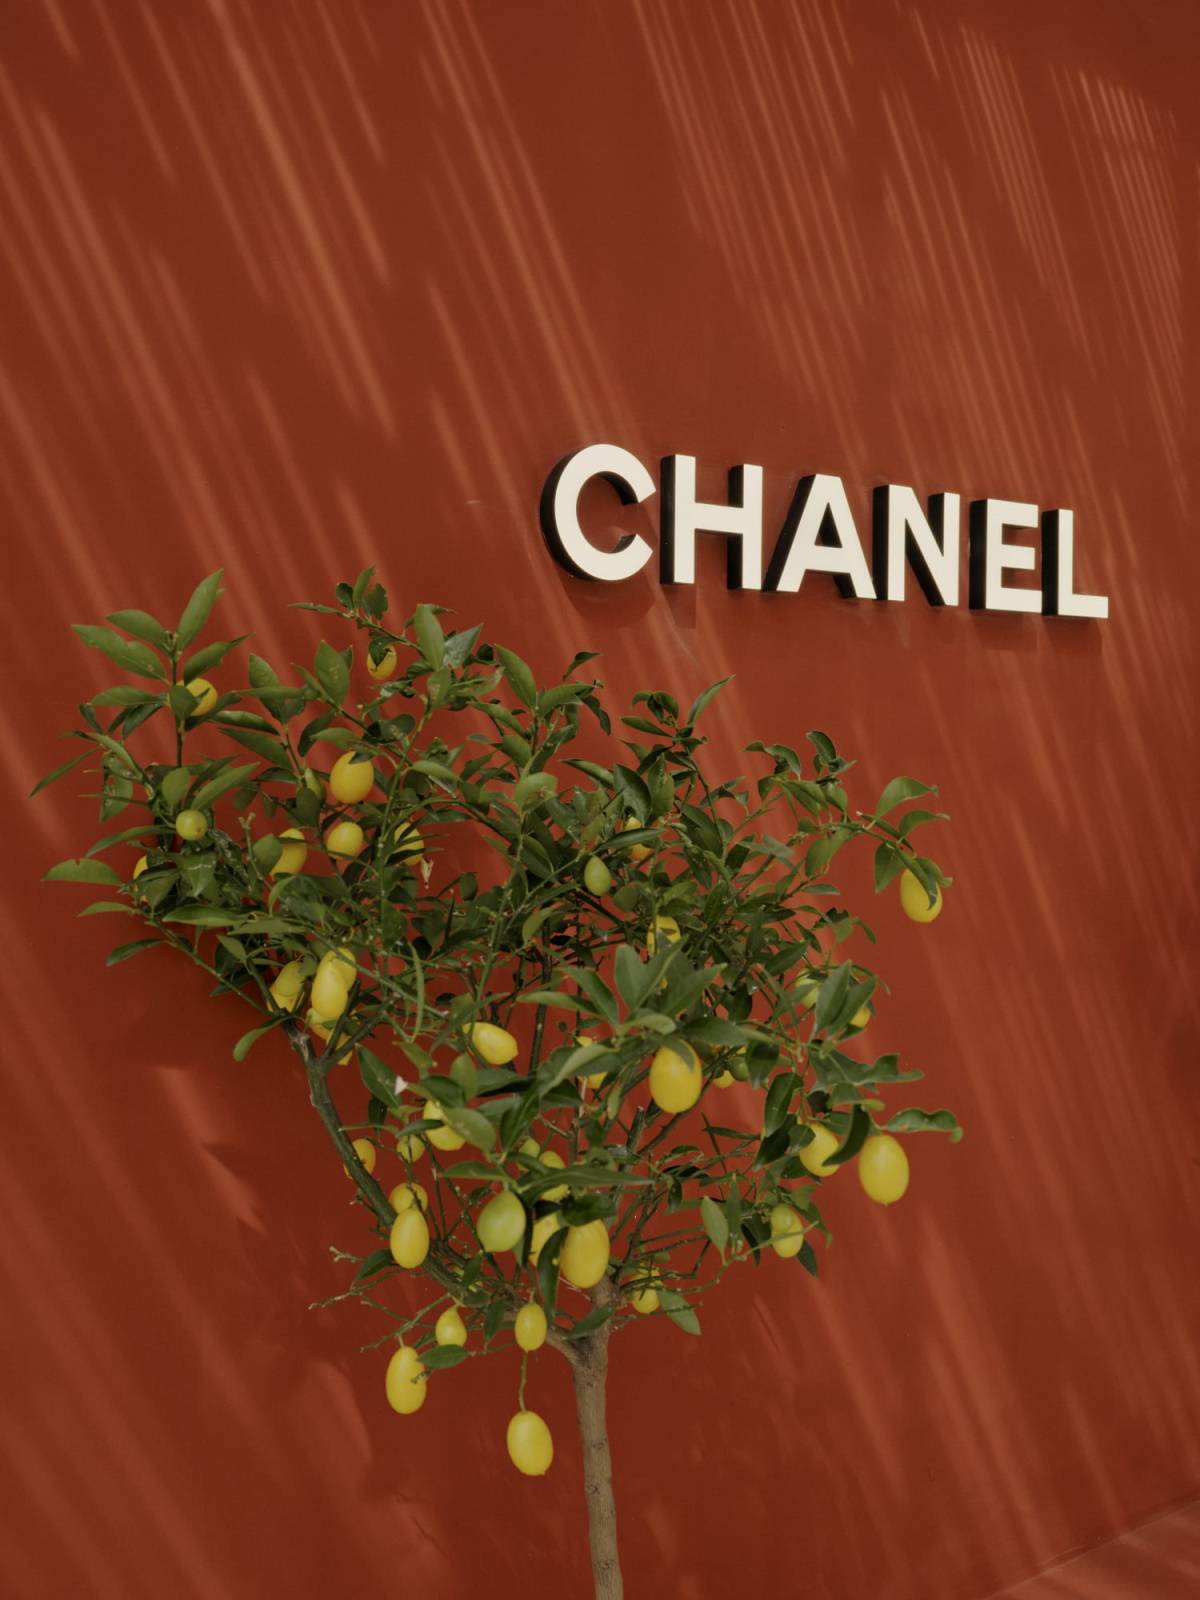 Marka Chanel otworzyła sezonowy butik na Capri. Sezonowy butik Chanel na włoskiej wyspie Capri utrzymano w minimalistycznym stylu przełamanym bujną roślinnością.